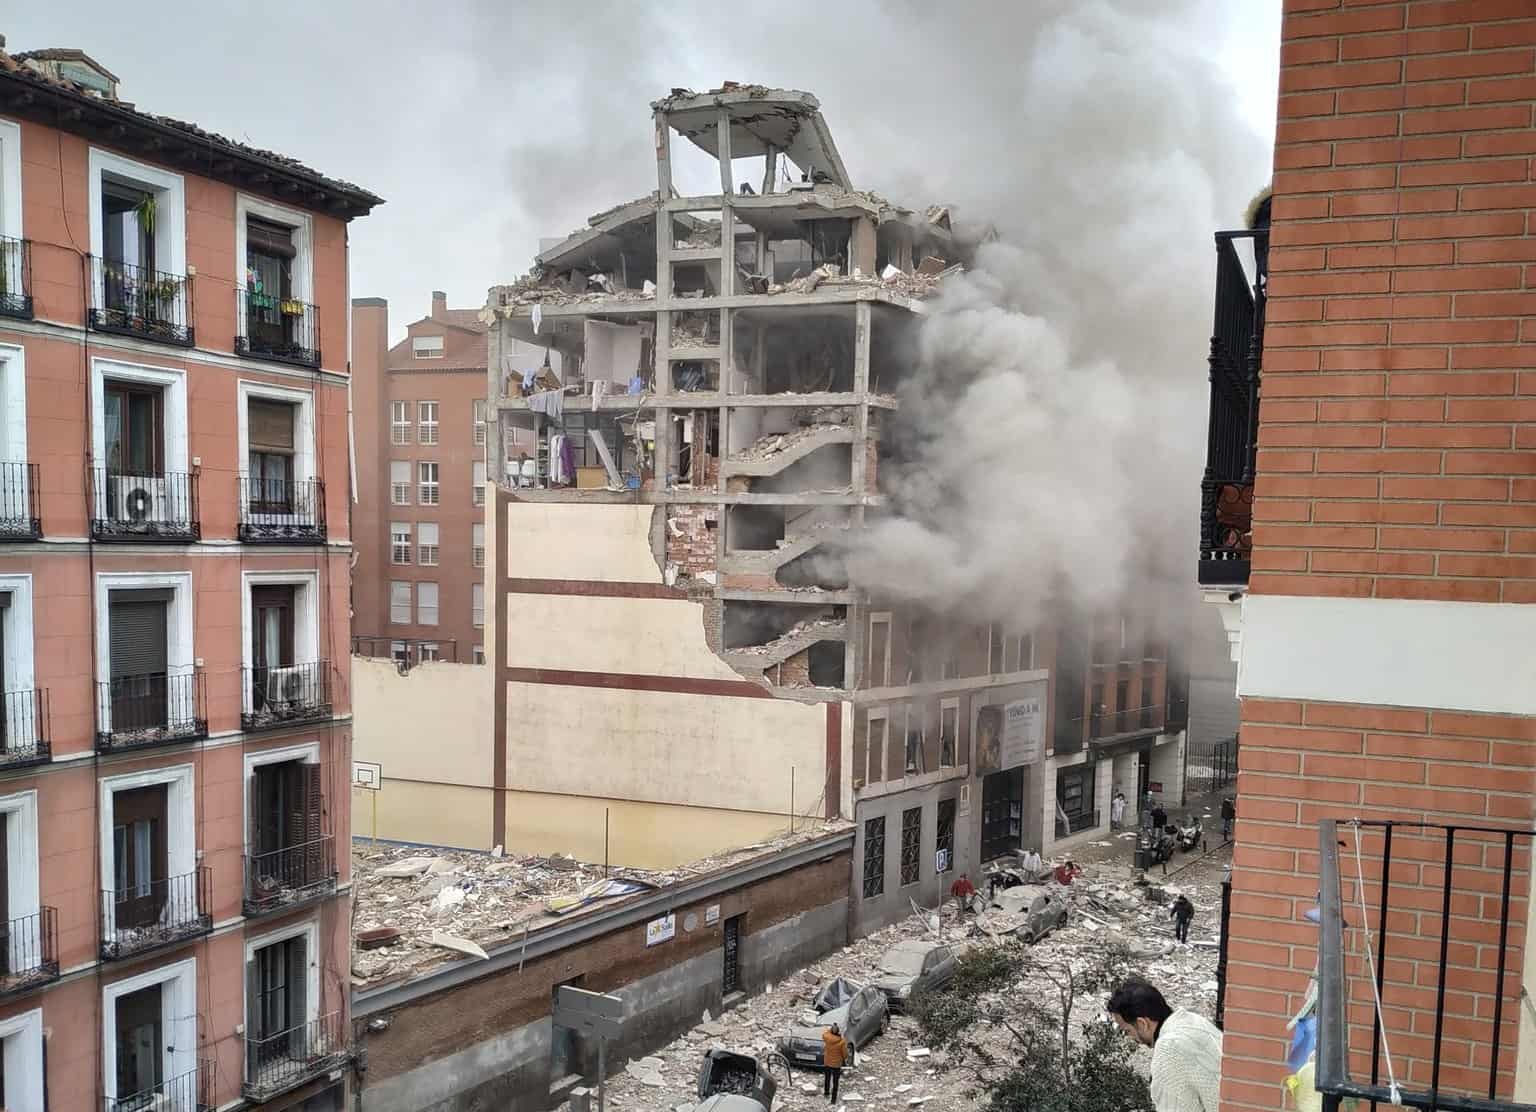 GloboNews entra com plantão e anuncia tragédia em um prédio na Espanha